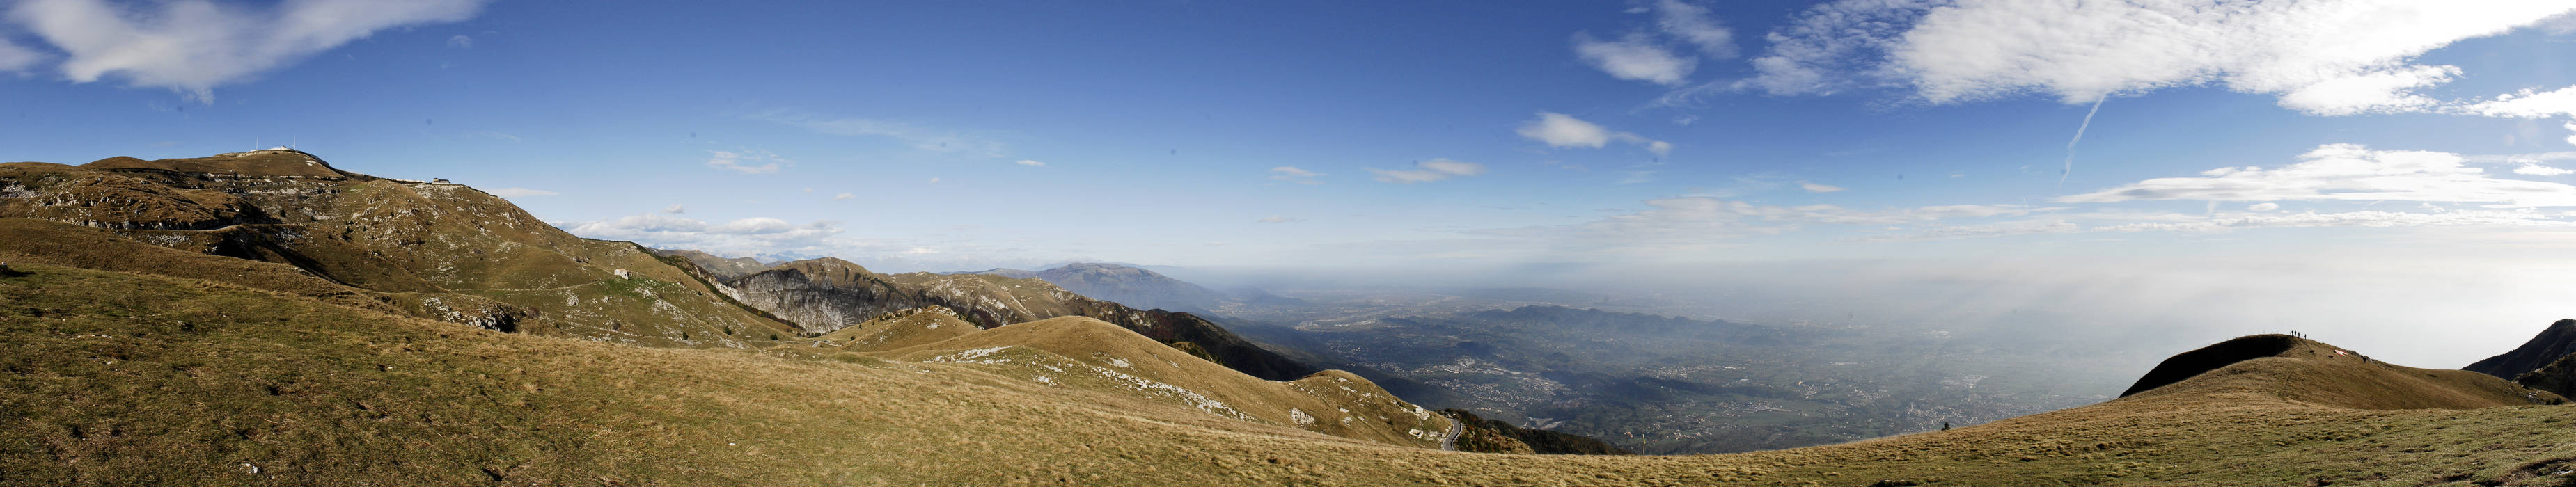 Monte Grappa, cima Grappa e pianura veneta - foto panoramica